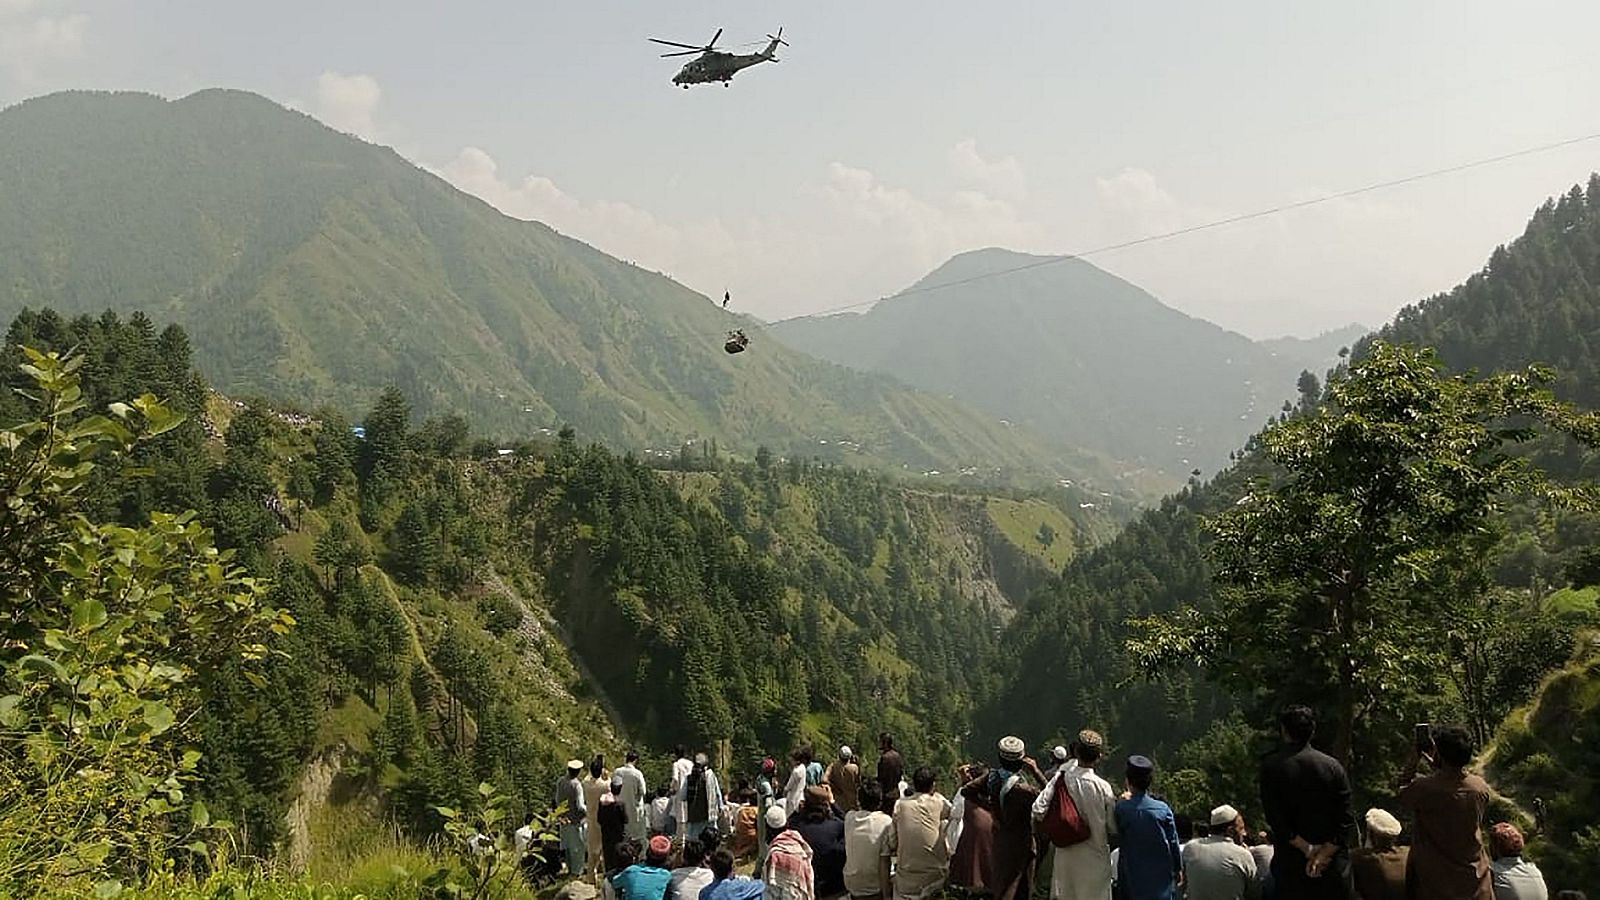 Seis estudiantes y dos adultos atrapados a 300 metros en un teleférico de Pakistán